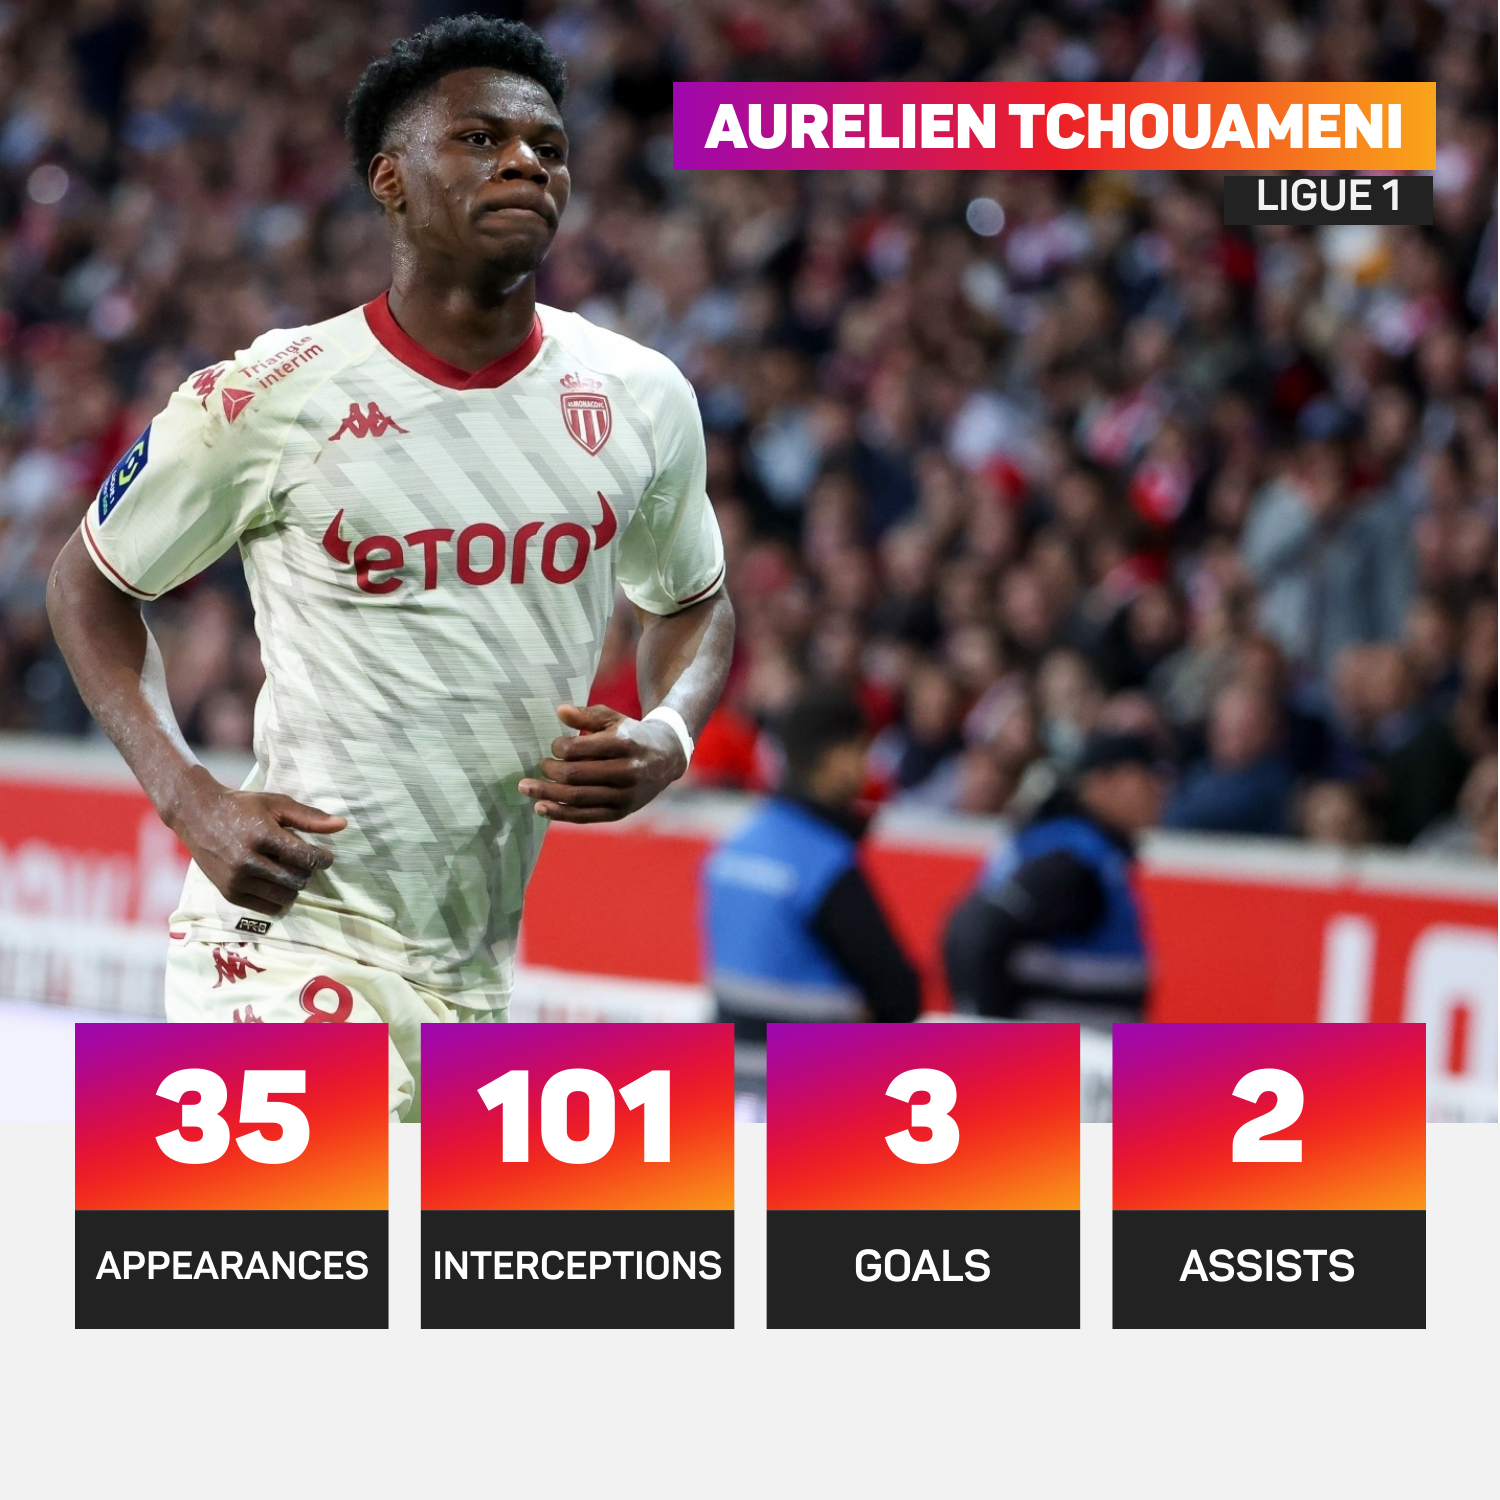 Aurelien Tchouameni made 35 appearances for Monaco in Ligue 1 last season